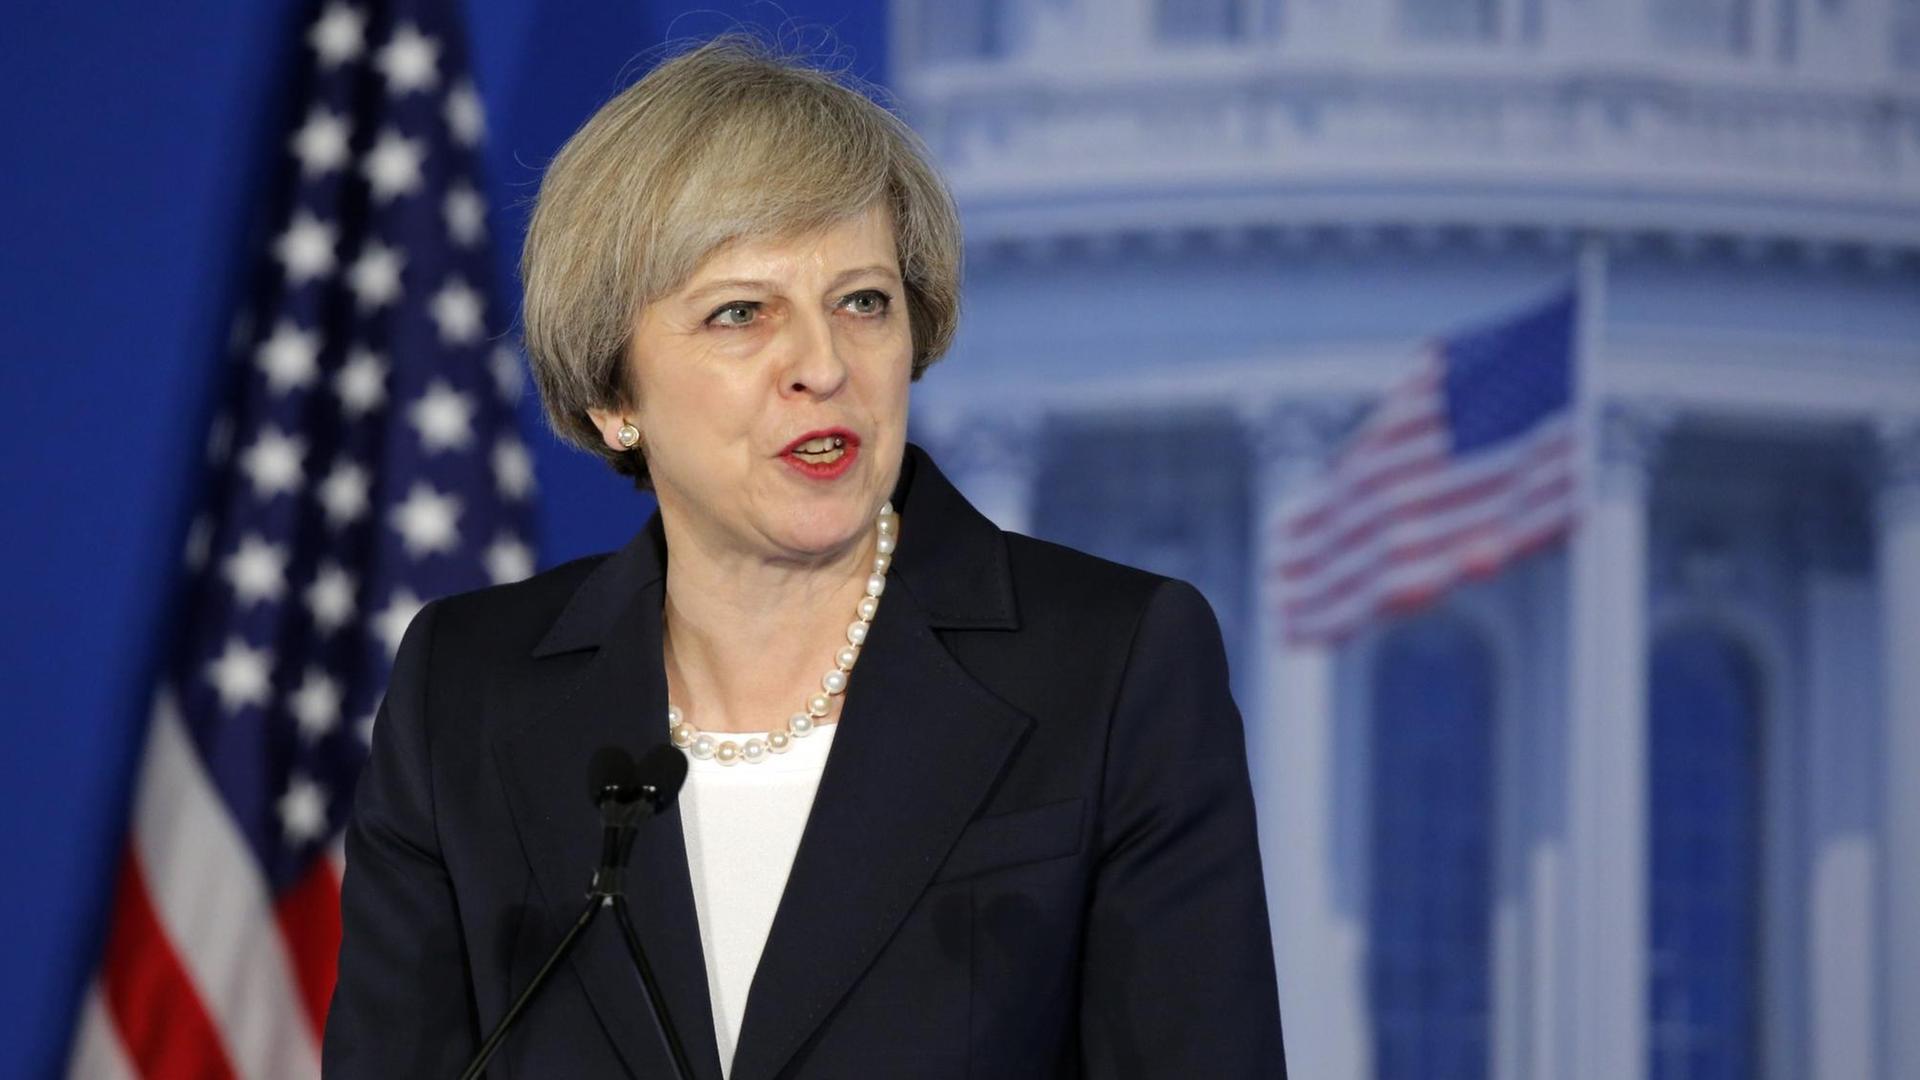 Die britische Premierministerin Theresa May besuchte in Philadelphia ein Treffen von Abgeordneten und Parteivertretern der US-Republikaner.